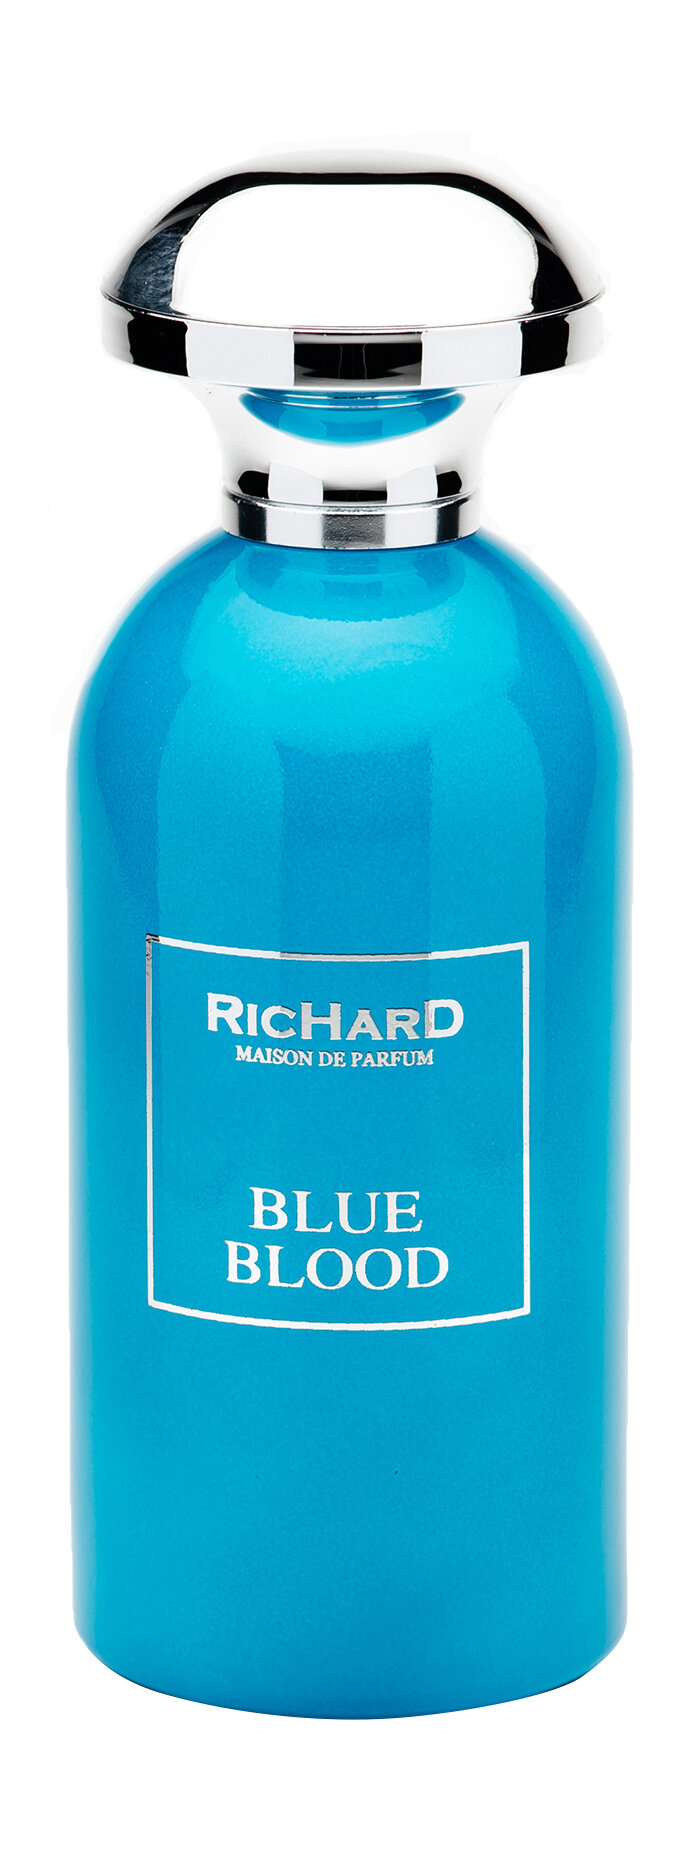 RICHARD MAISON DE PARFUM Blue Blood Парфюмерная вода унисекс, 100 мл